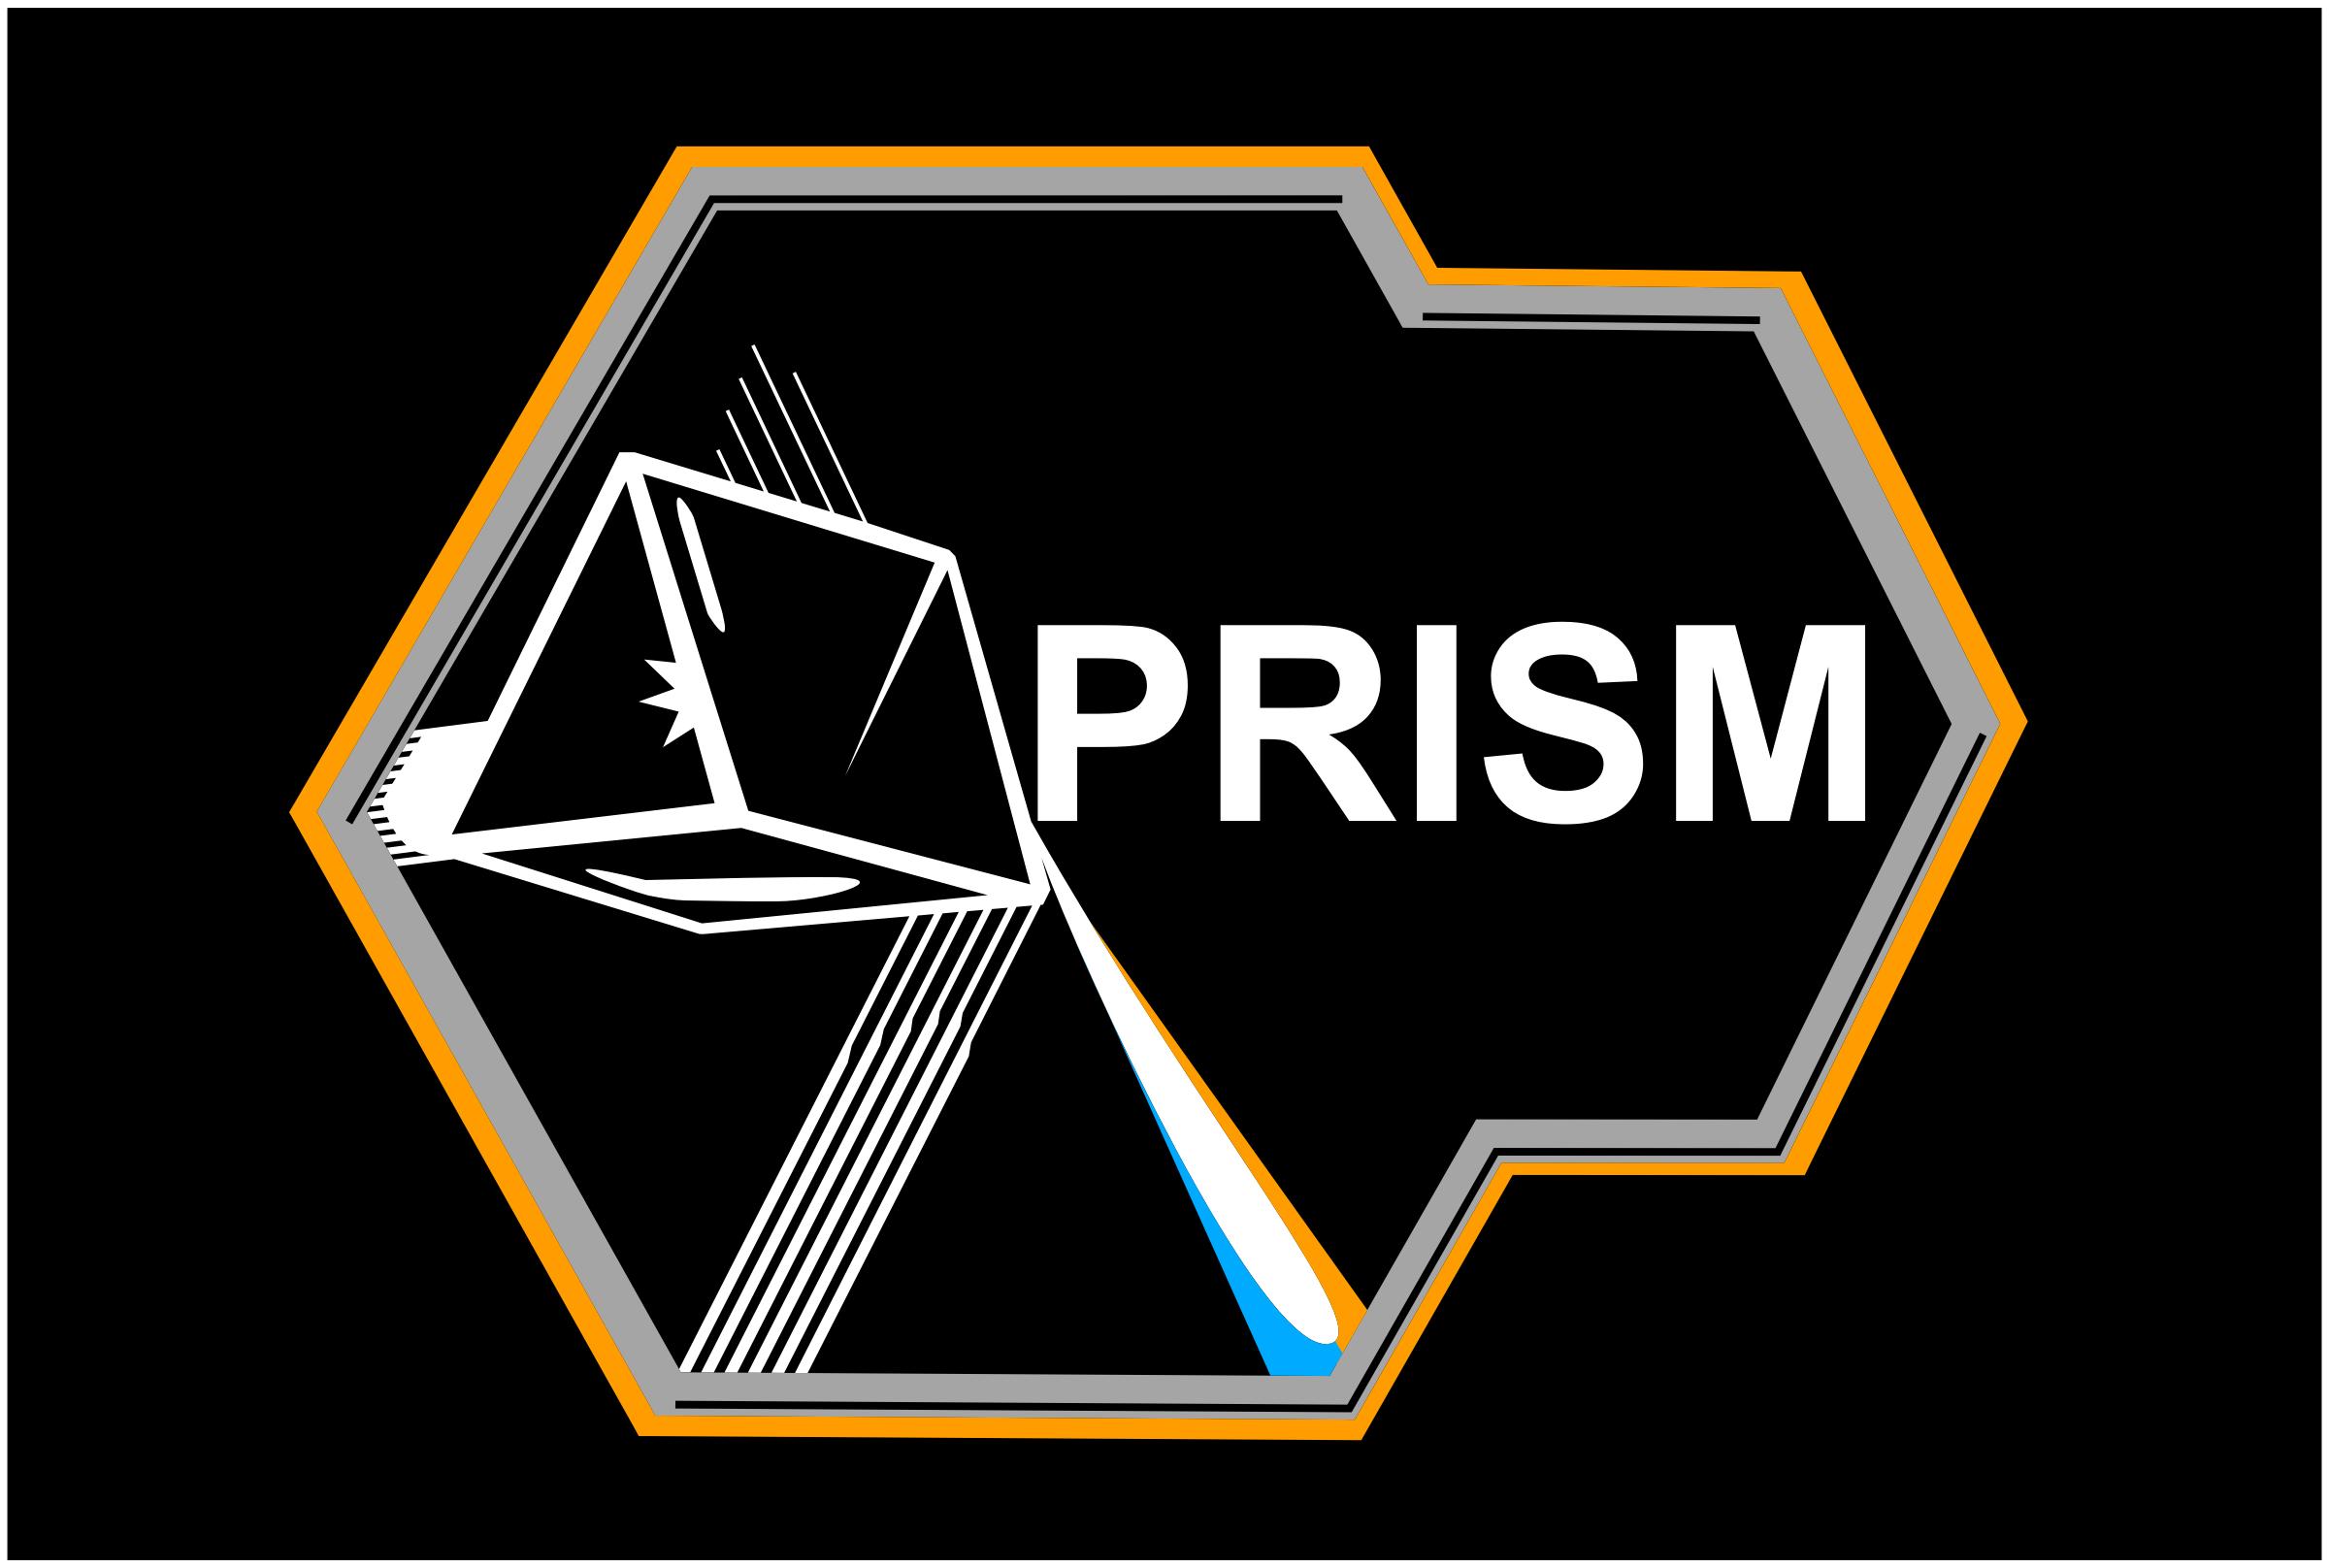 PRISM logo png